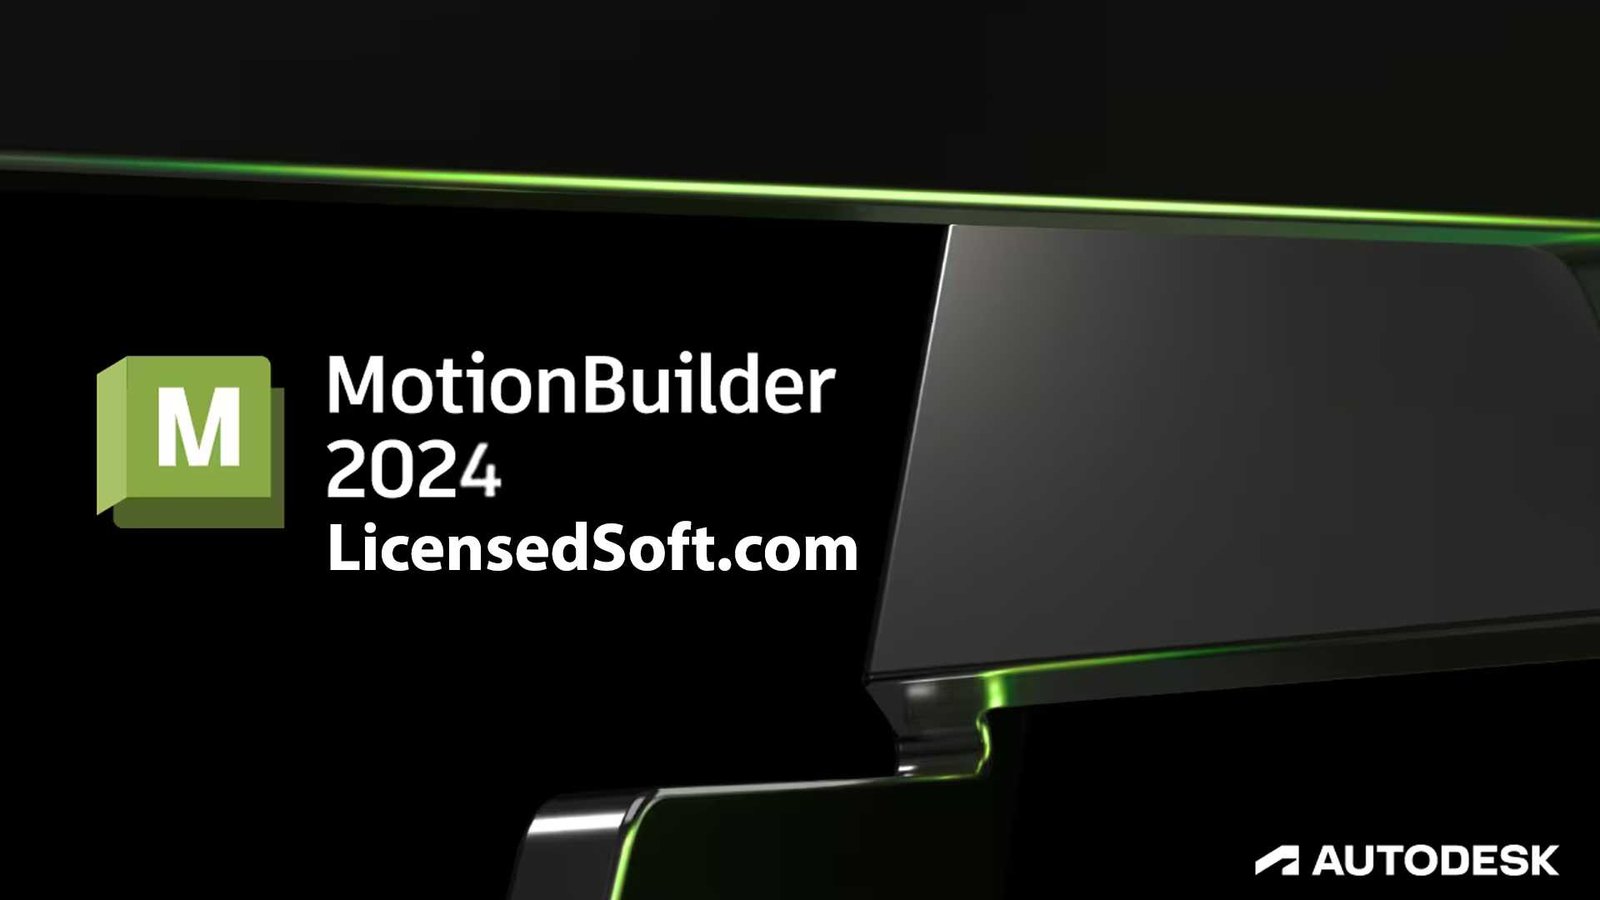 Autodesk MotionBuilder 2024 Cover Image By LicensedSoft